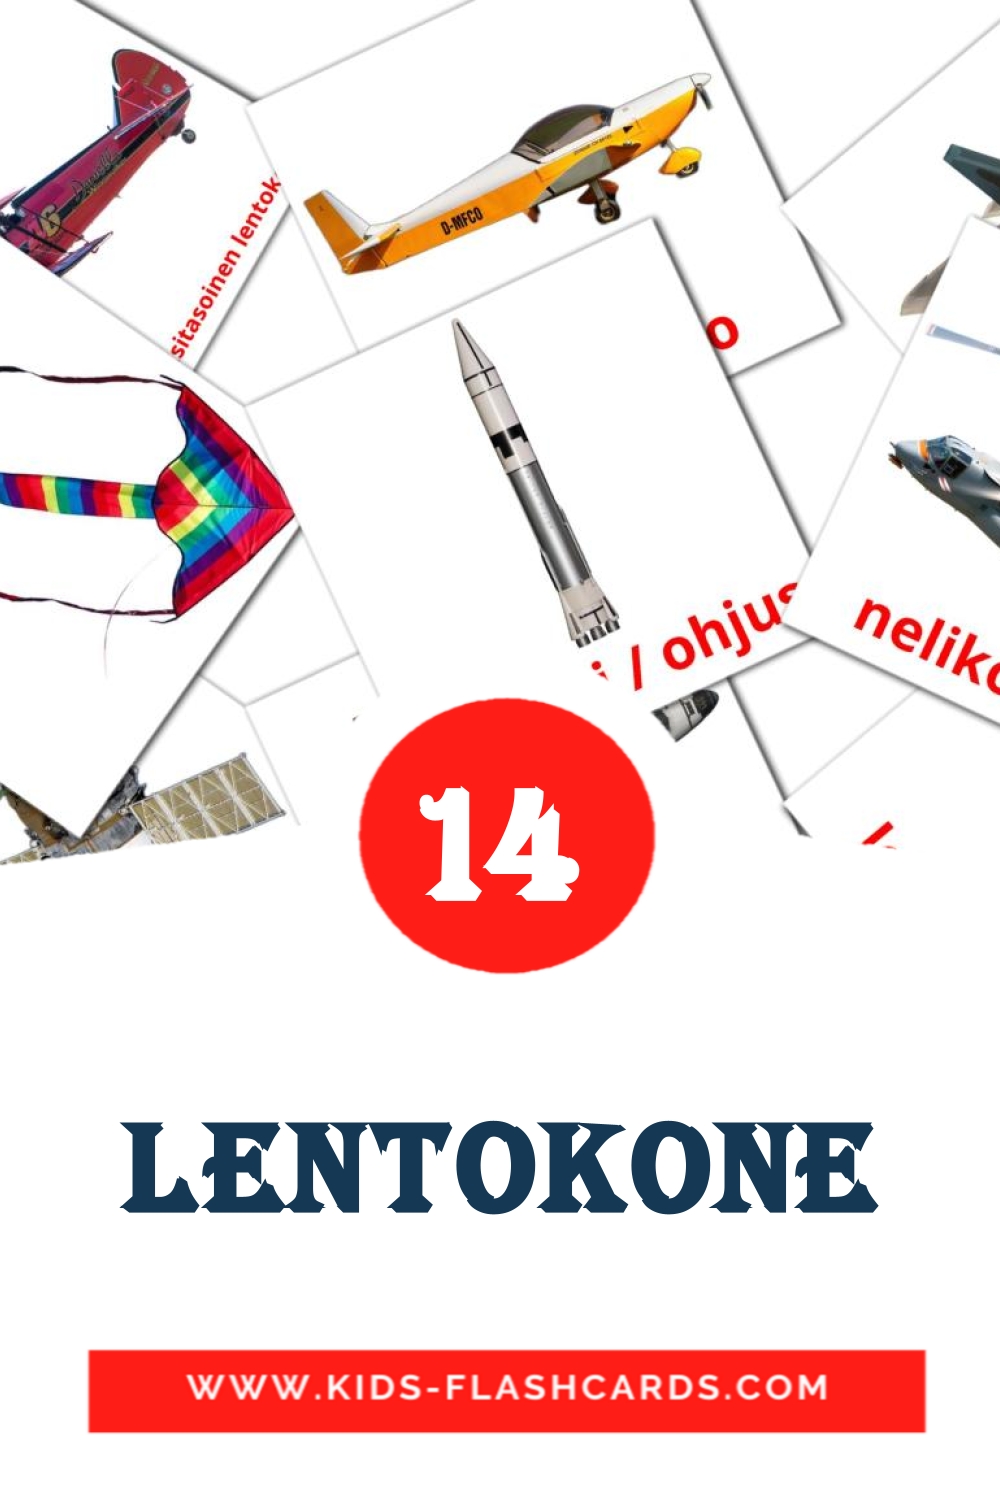 14 tarjetas didacticas de lentokone para el jardín de infancia en finlandés